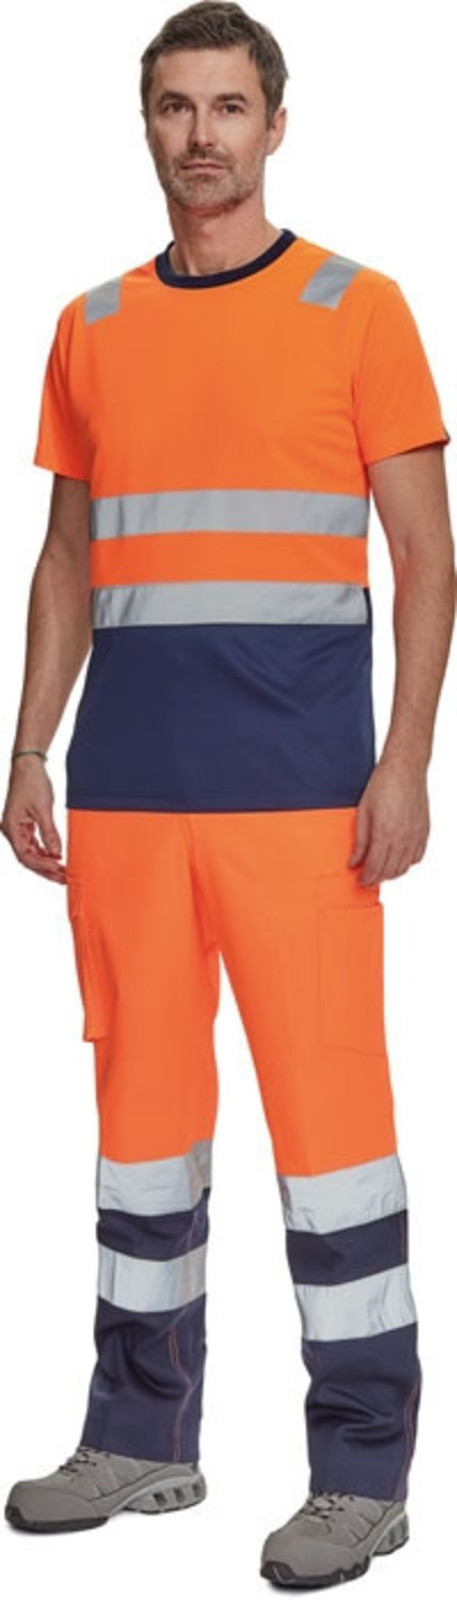 Reflexné tričko Cerva Monzon HV - veľkosť: XXL, farba: oranžová/navy